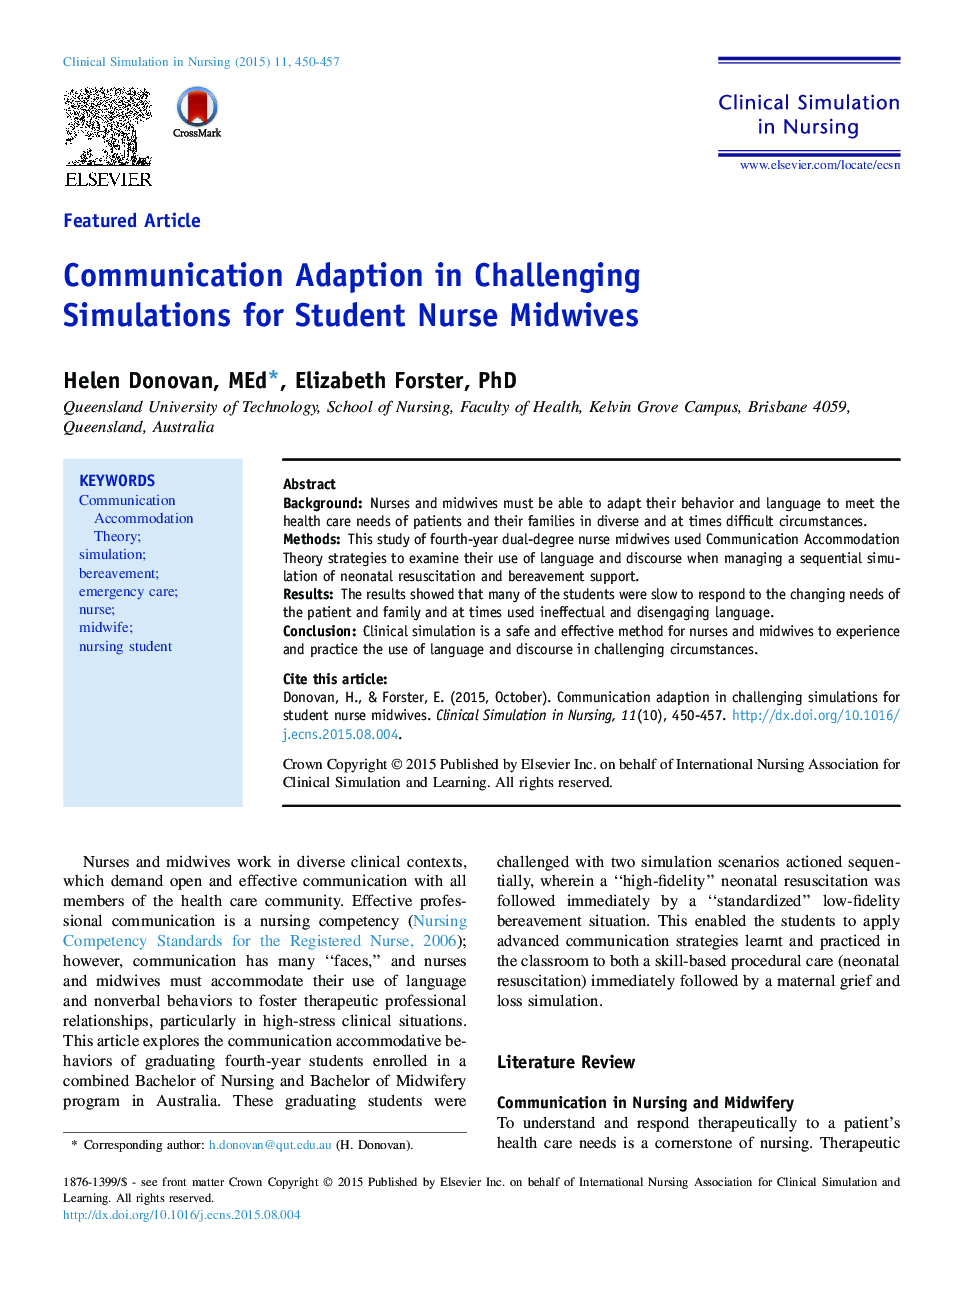 سازگاری ارتباطی در شبیه سازی های چالشی برای ماماهای پرستار دانشجویی 